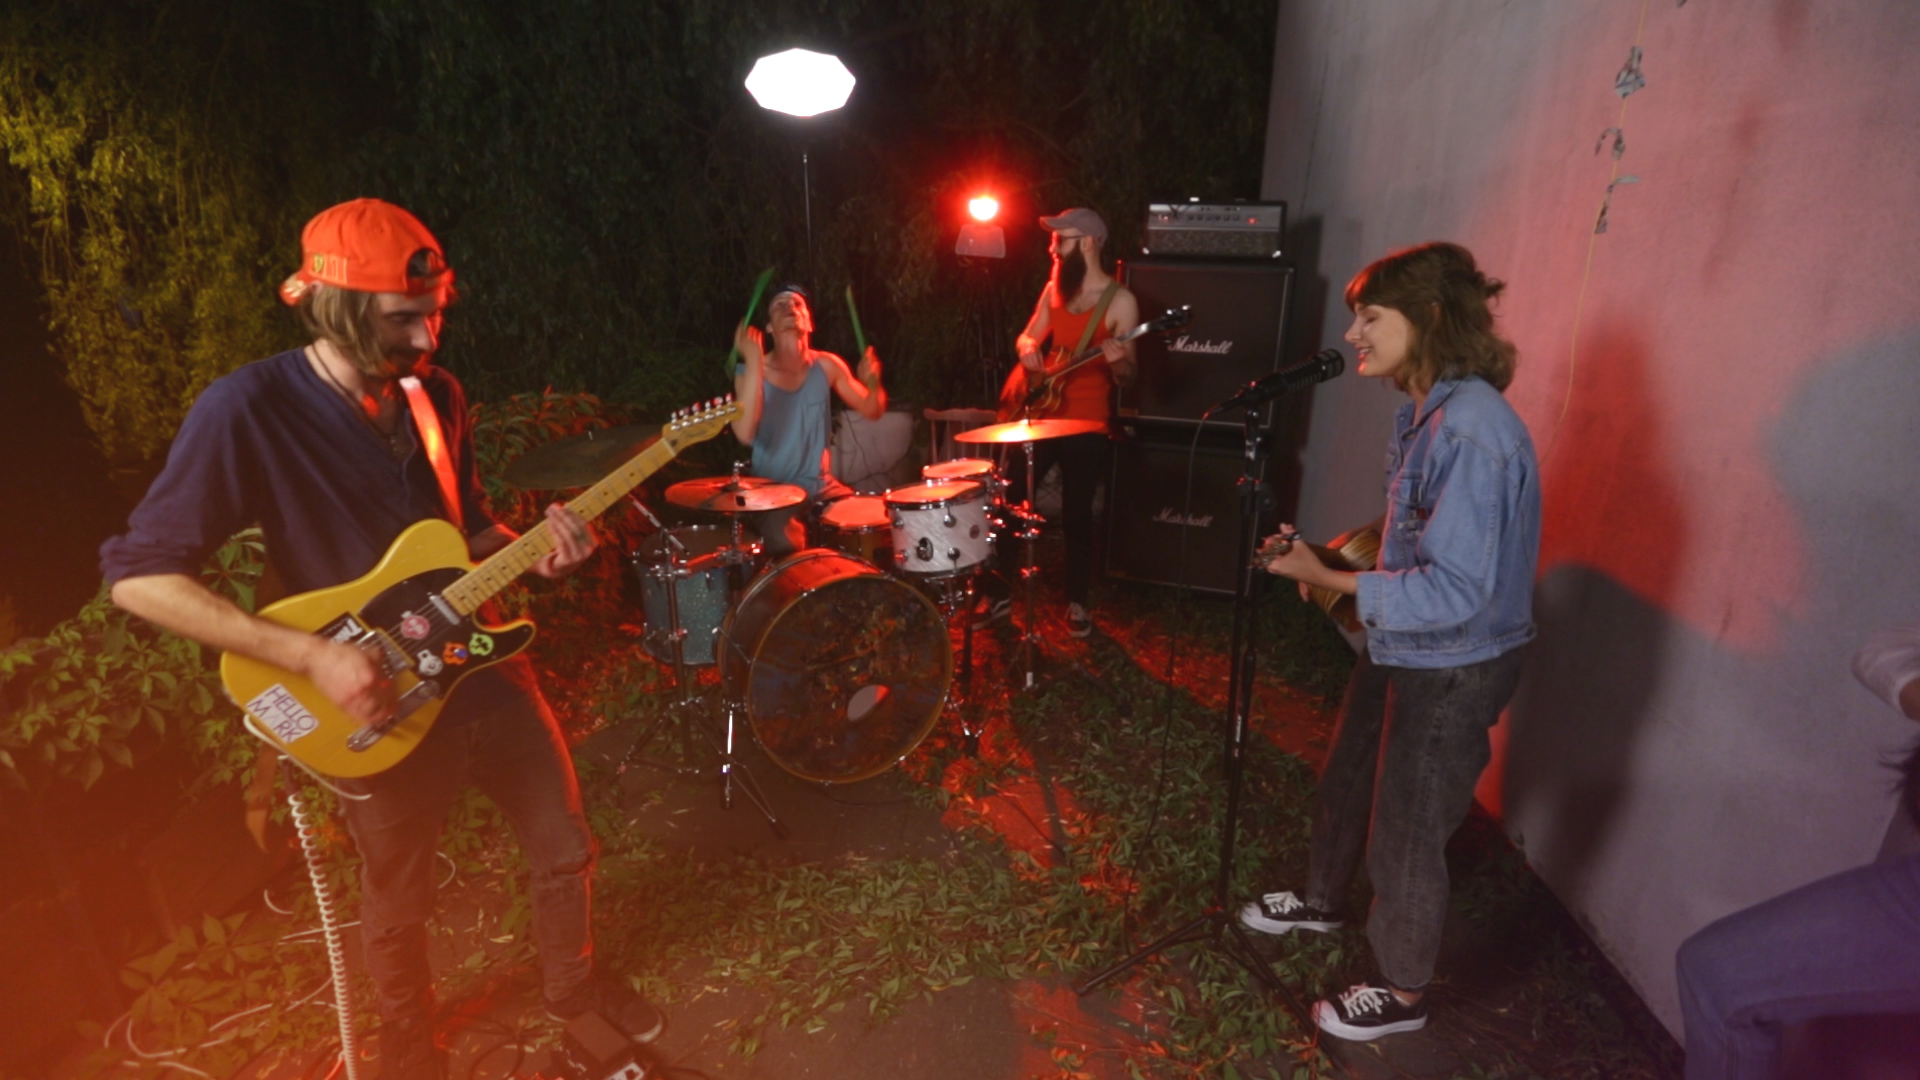 Na zdjęciu widac wieczorne jam session zespolu, w ktorym wokalistka jest dziewczyna a oswietla ich czerwone swiatlo